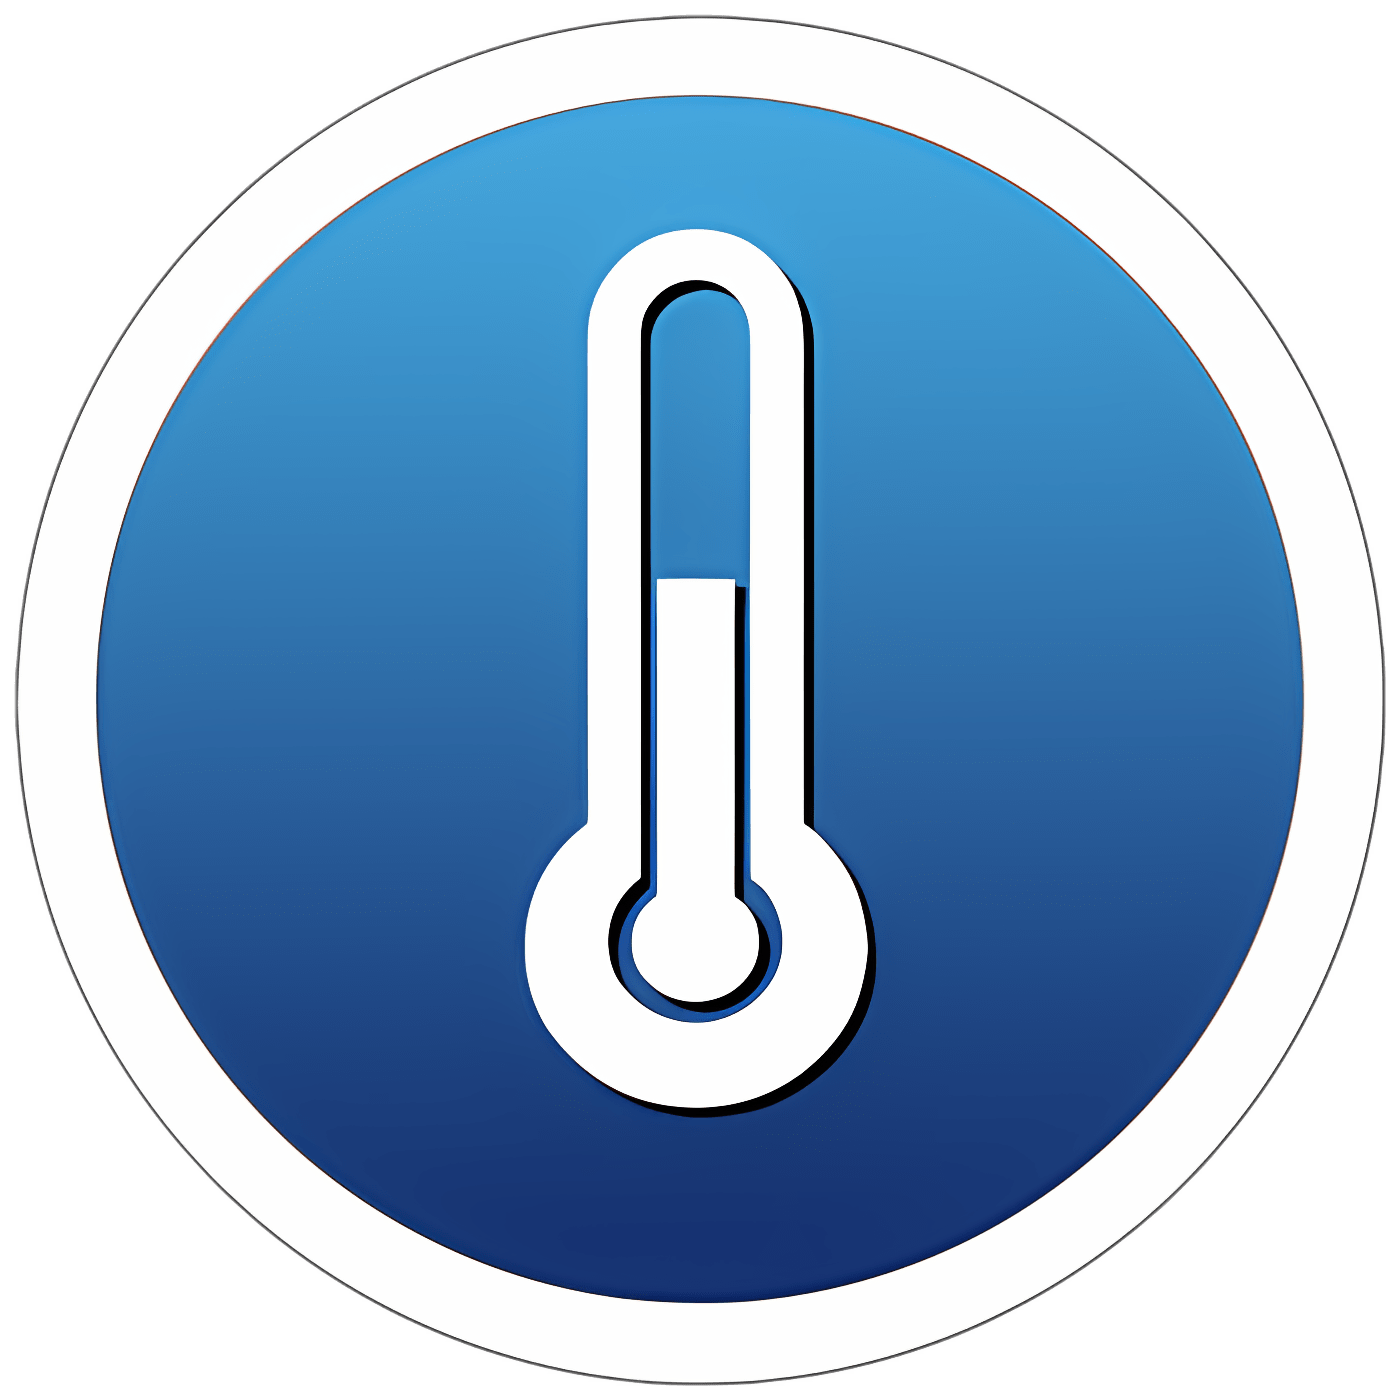 Descargar Temps - Weather, Time & Netatmo Instalar Más reciente Aplicación descargador